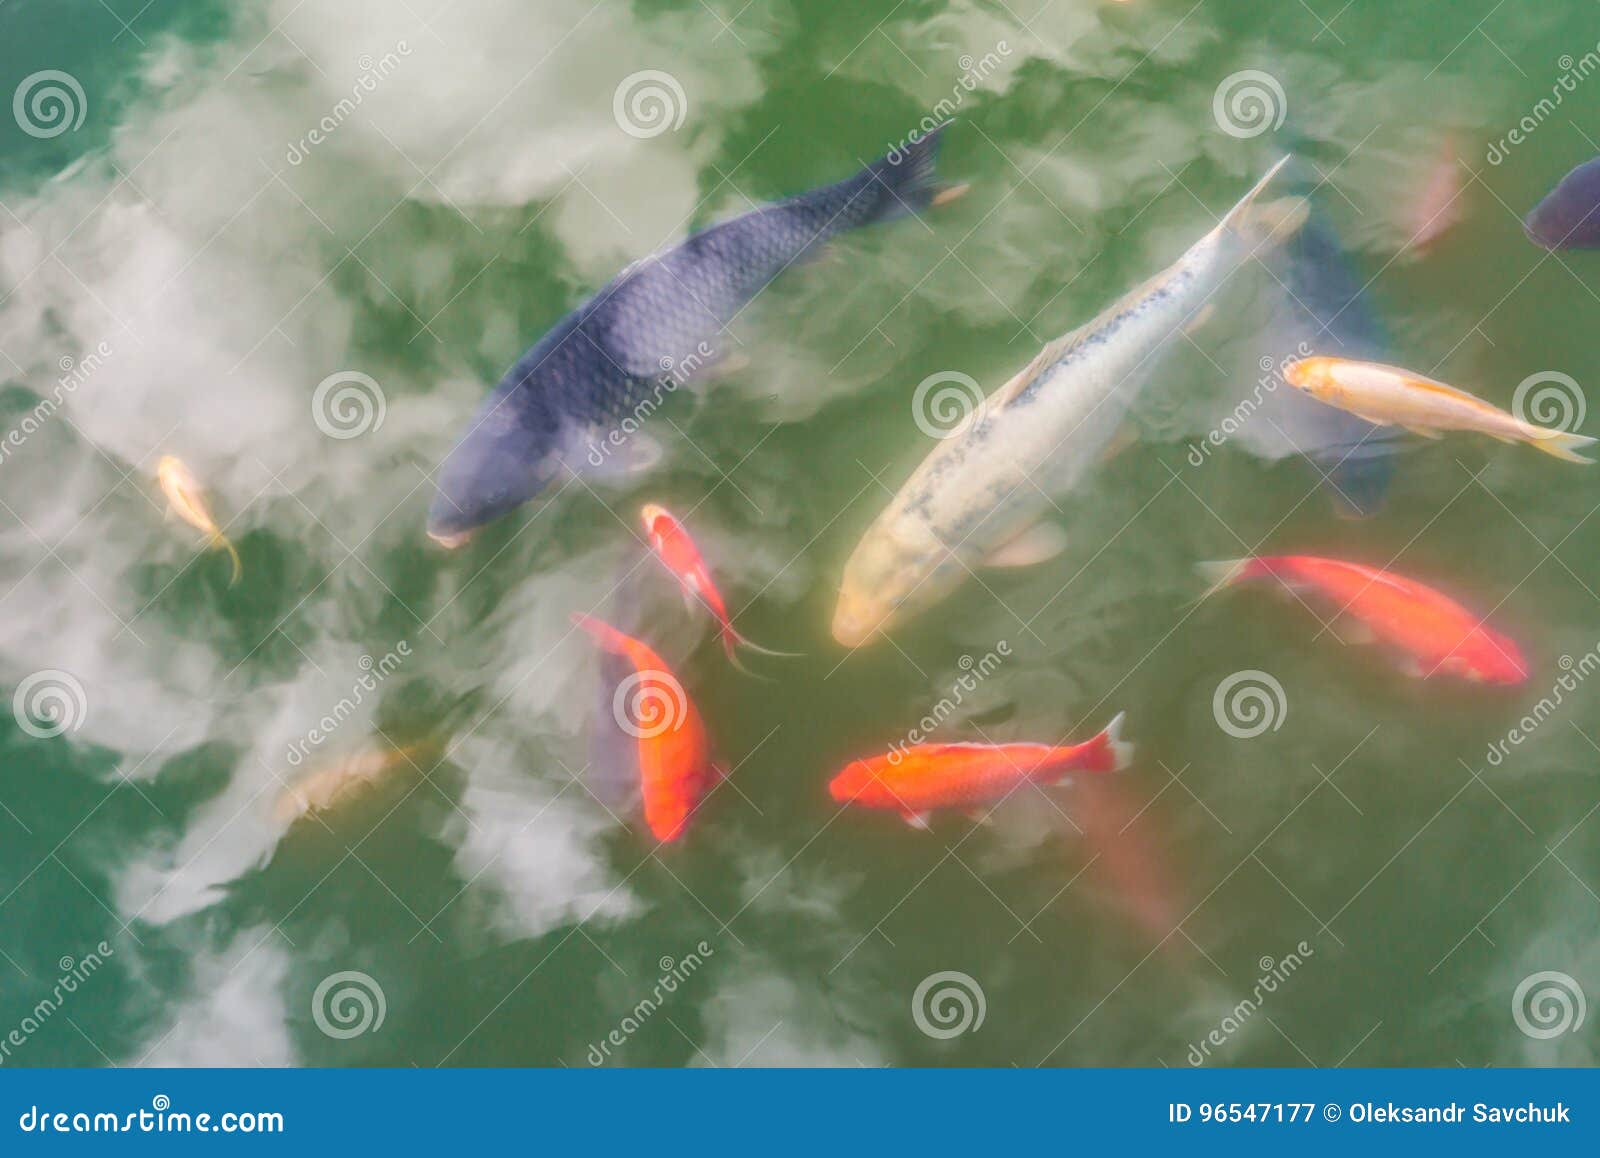 Los pescados decorativos coloridos y las nubes agua-reflejadas flotan en una charca artificial, visión superior. Vemos las flores amarillas de un lirio de agua en agua azul con las hojas hermosas verdes con reflexiones